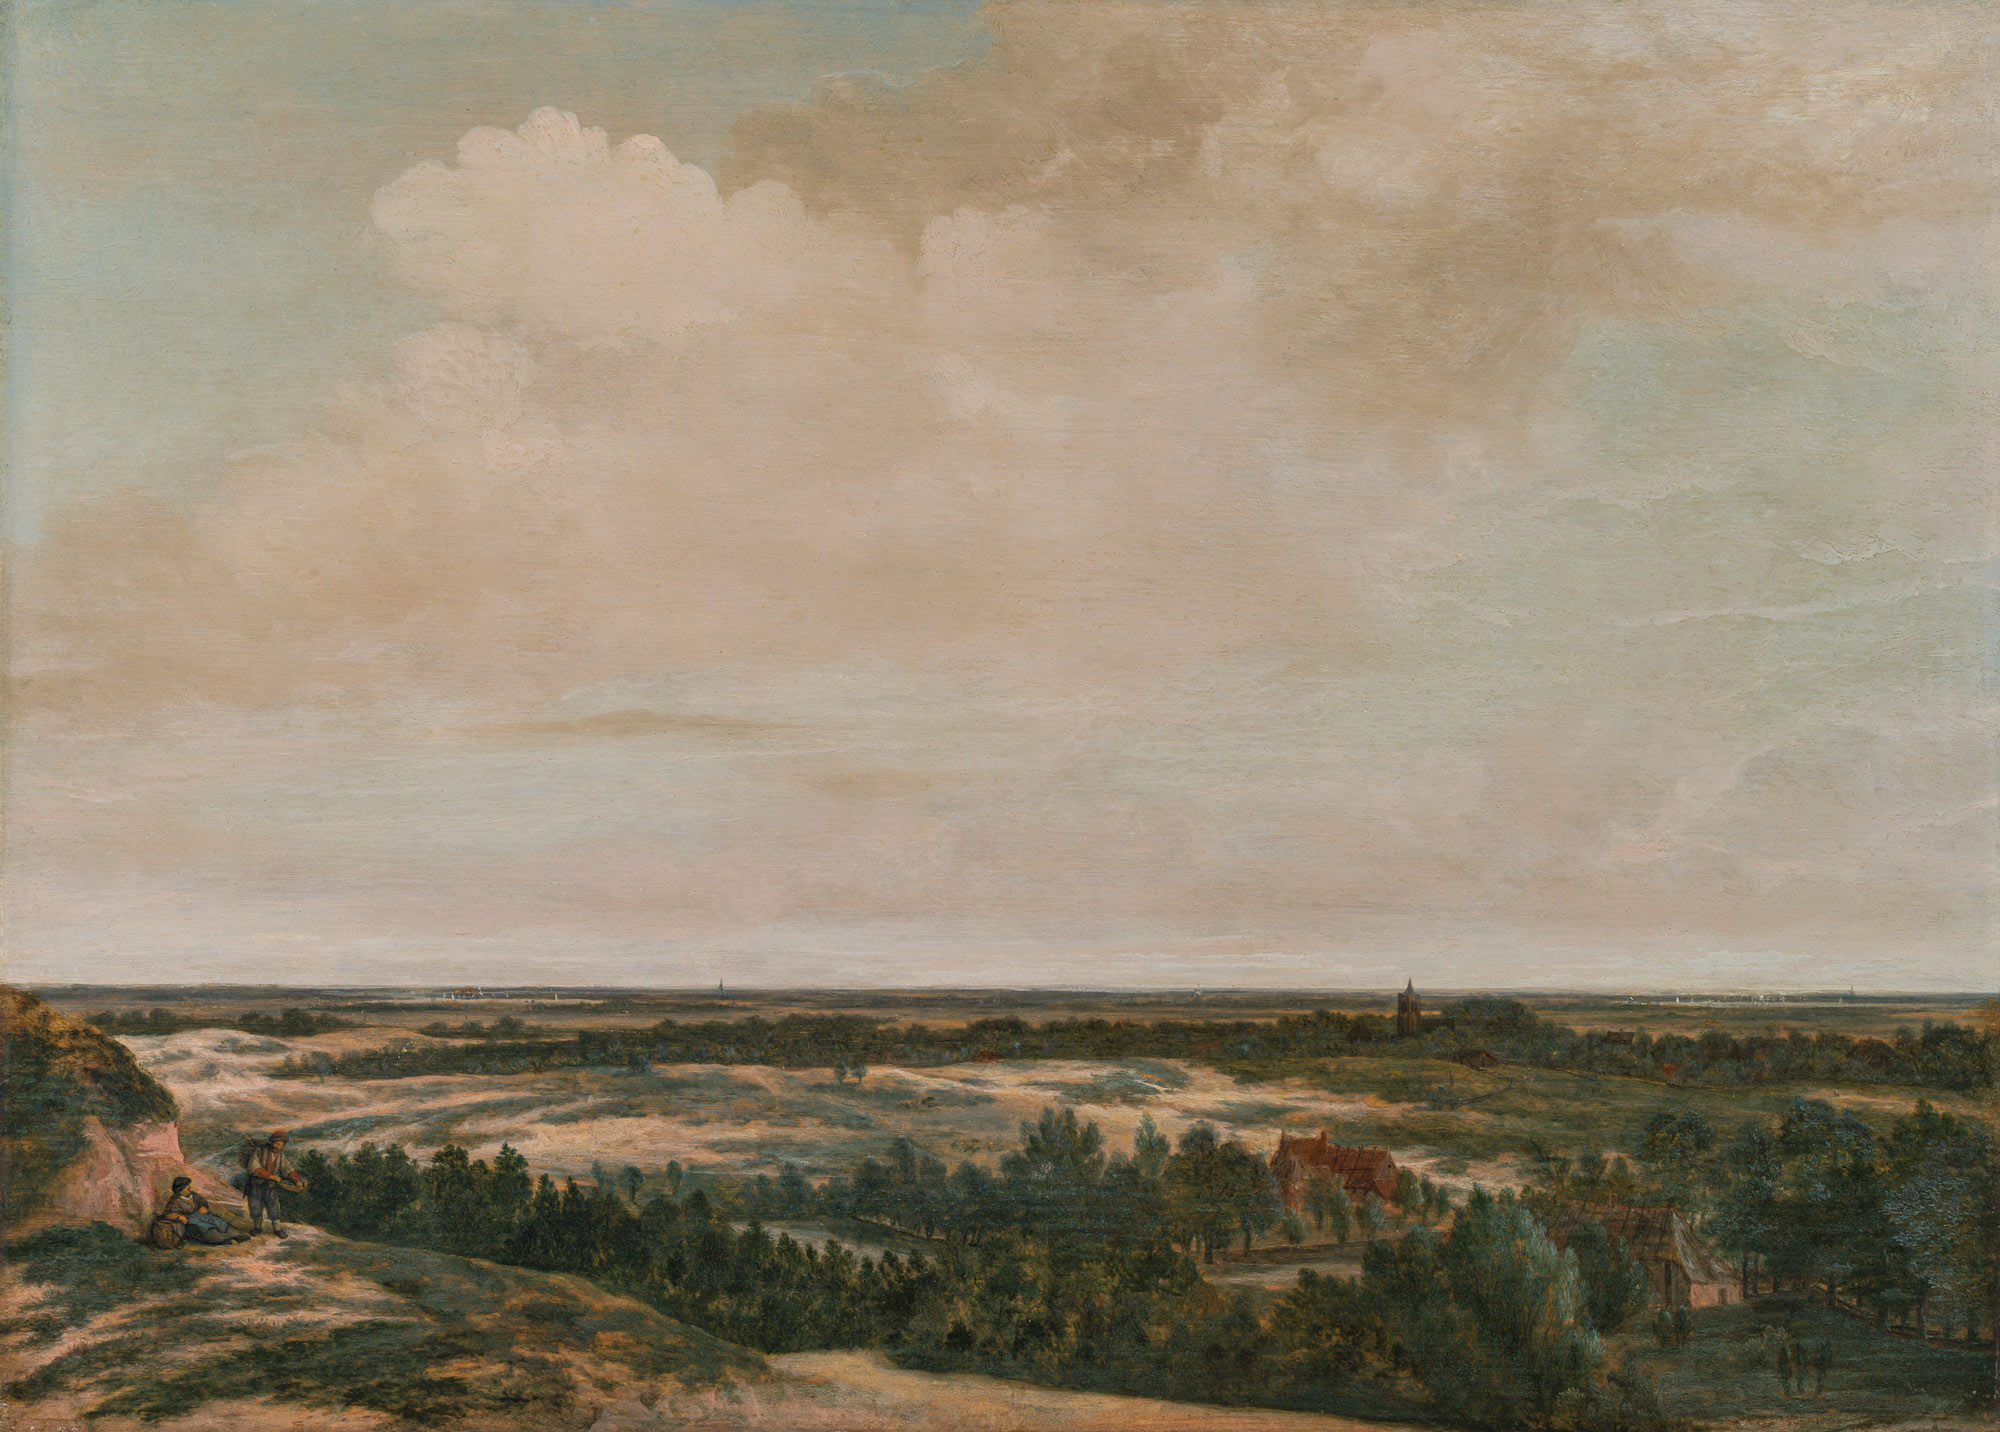 Jan Vermeer van Haarlem d. Ä.: Dune Landscape near Nordwijk